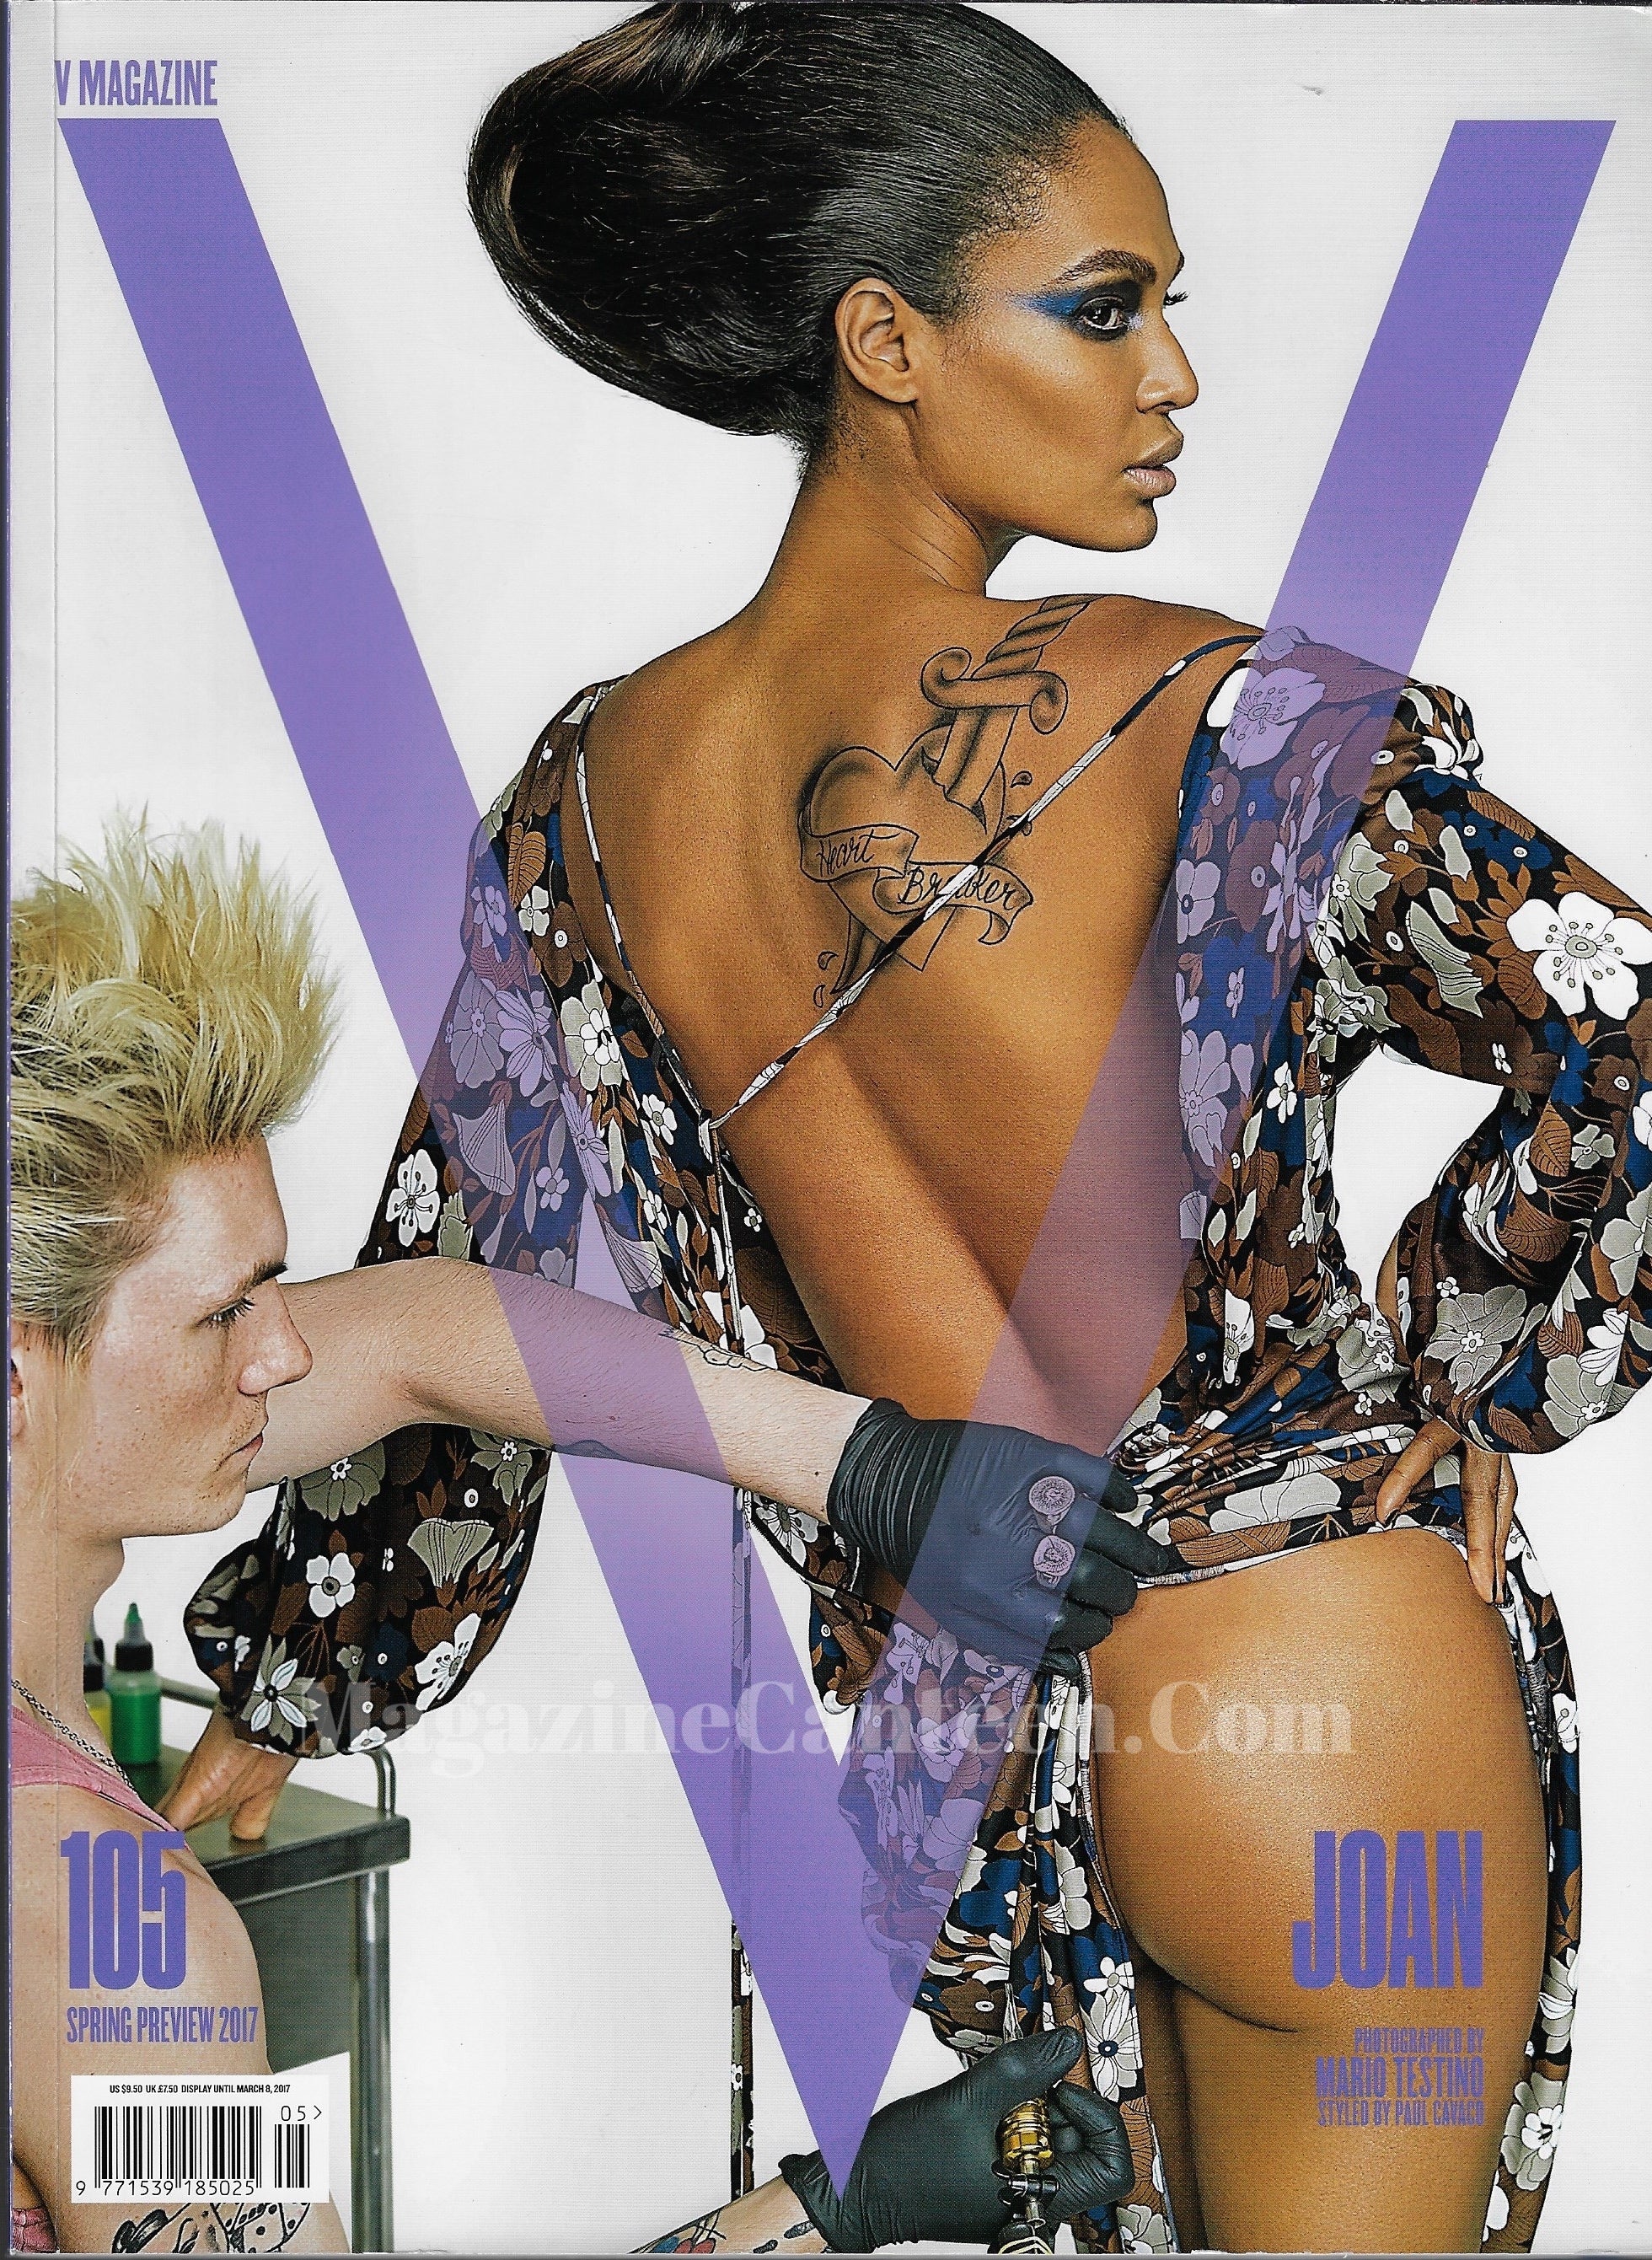 V Magazine 105 - Joan Smalls 